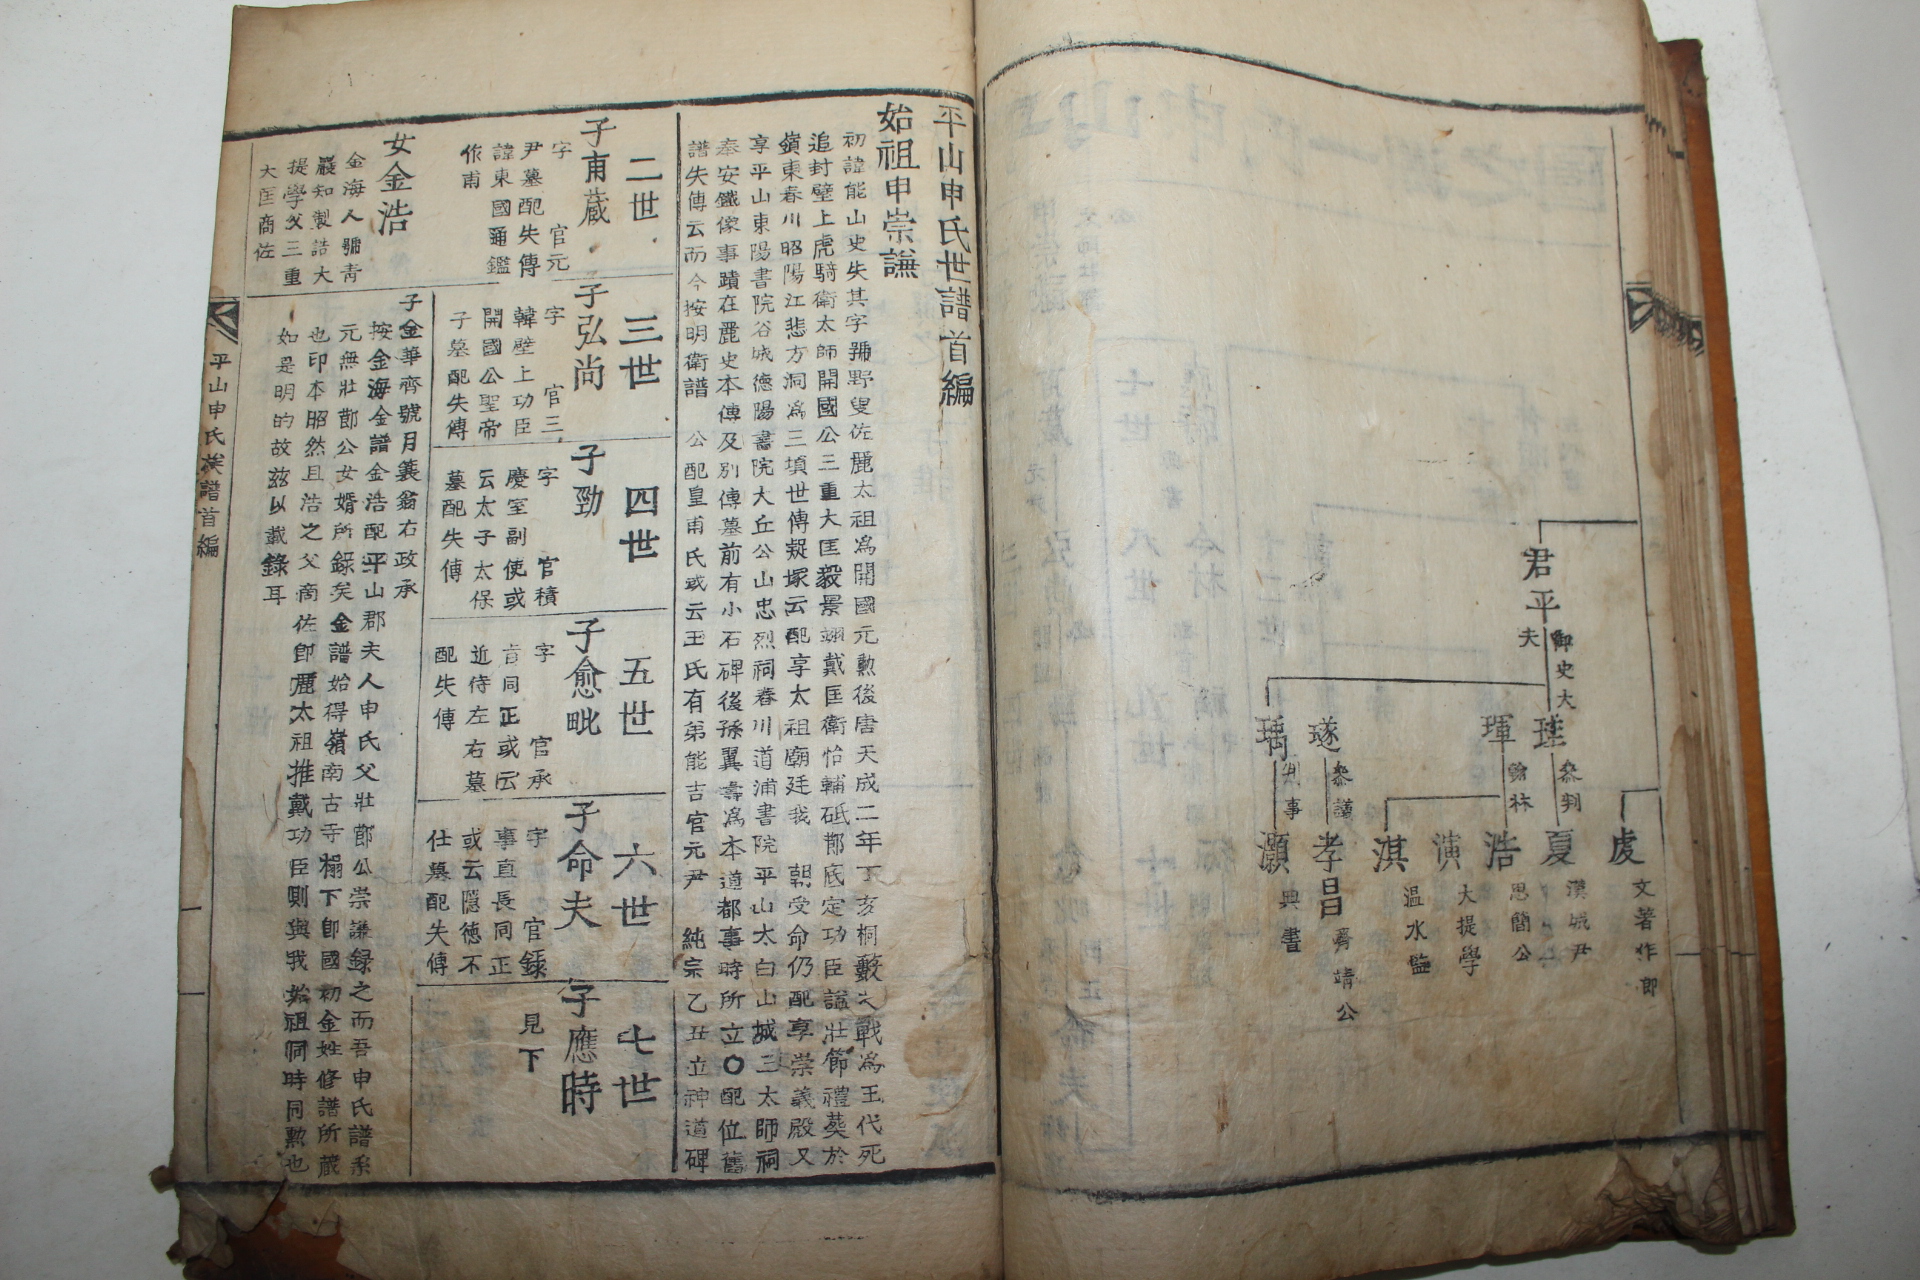 조선시대 목활자본 평산신씨세덕언행록(平山申氏世德言行錄) 1책완질